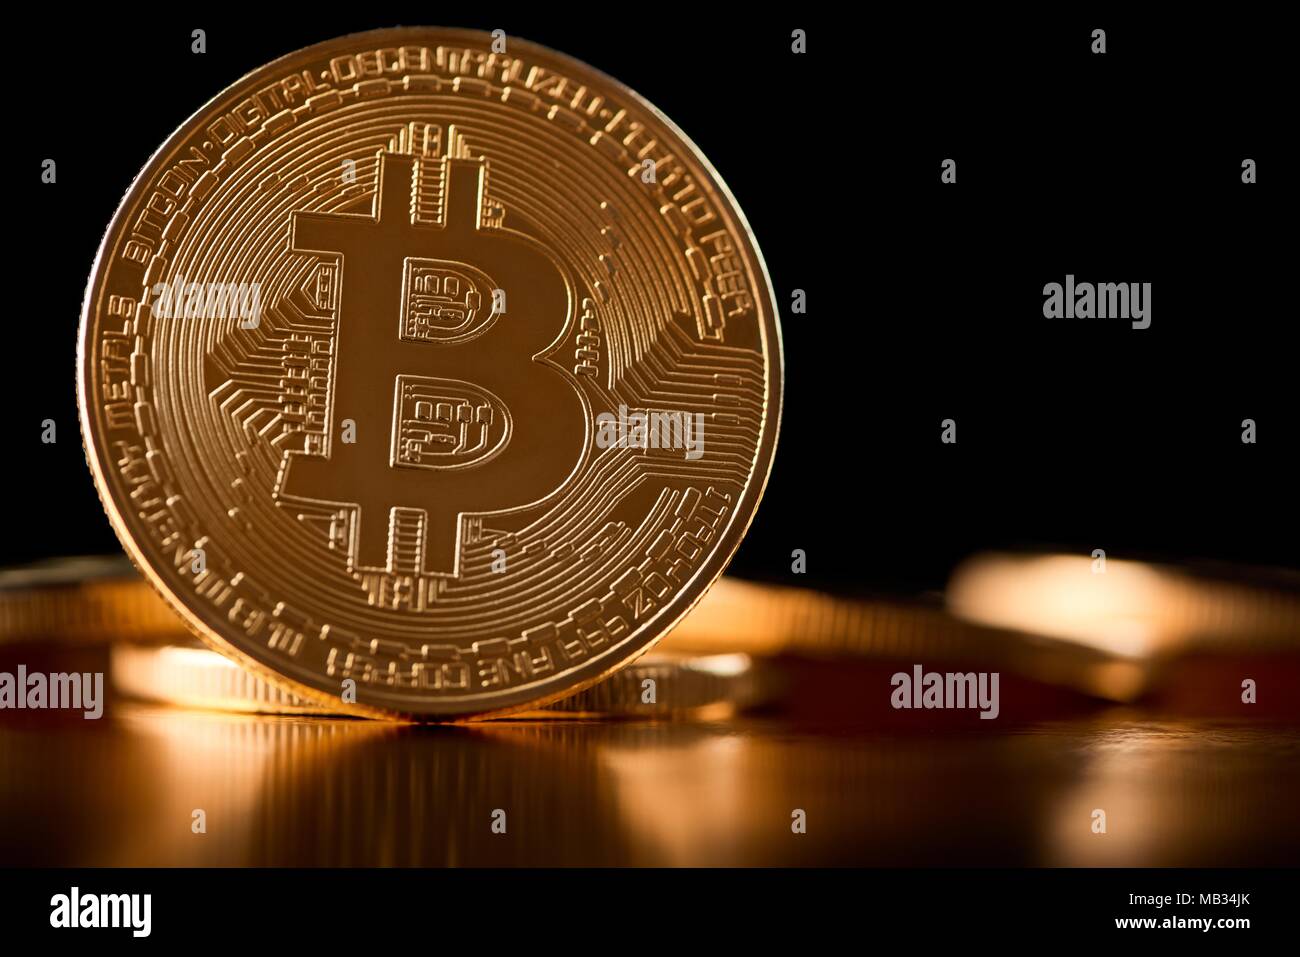 Bitcoin or comme monnaie numérique principal dans le monde présenté sur fond flou avec d'autres cryptocurrencies. Blockchain web virtuel de l'argent électronique finances l'avenir de l'exploitation minière de l'innovation bancaire tendance Banque D'Images